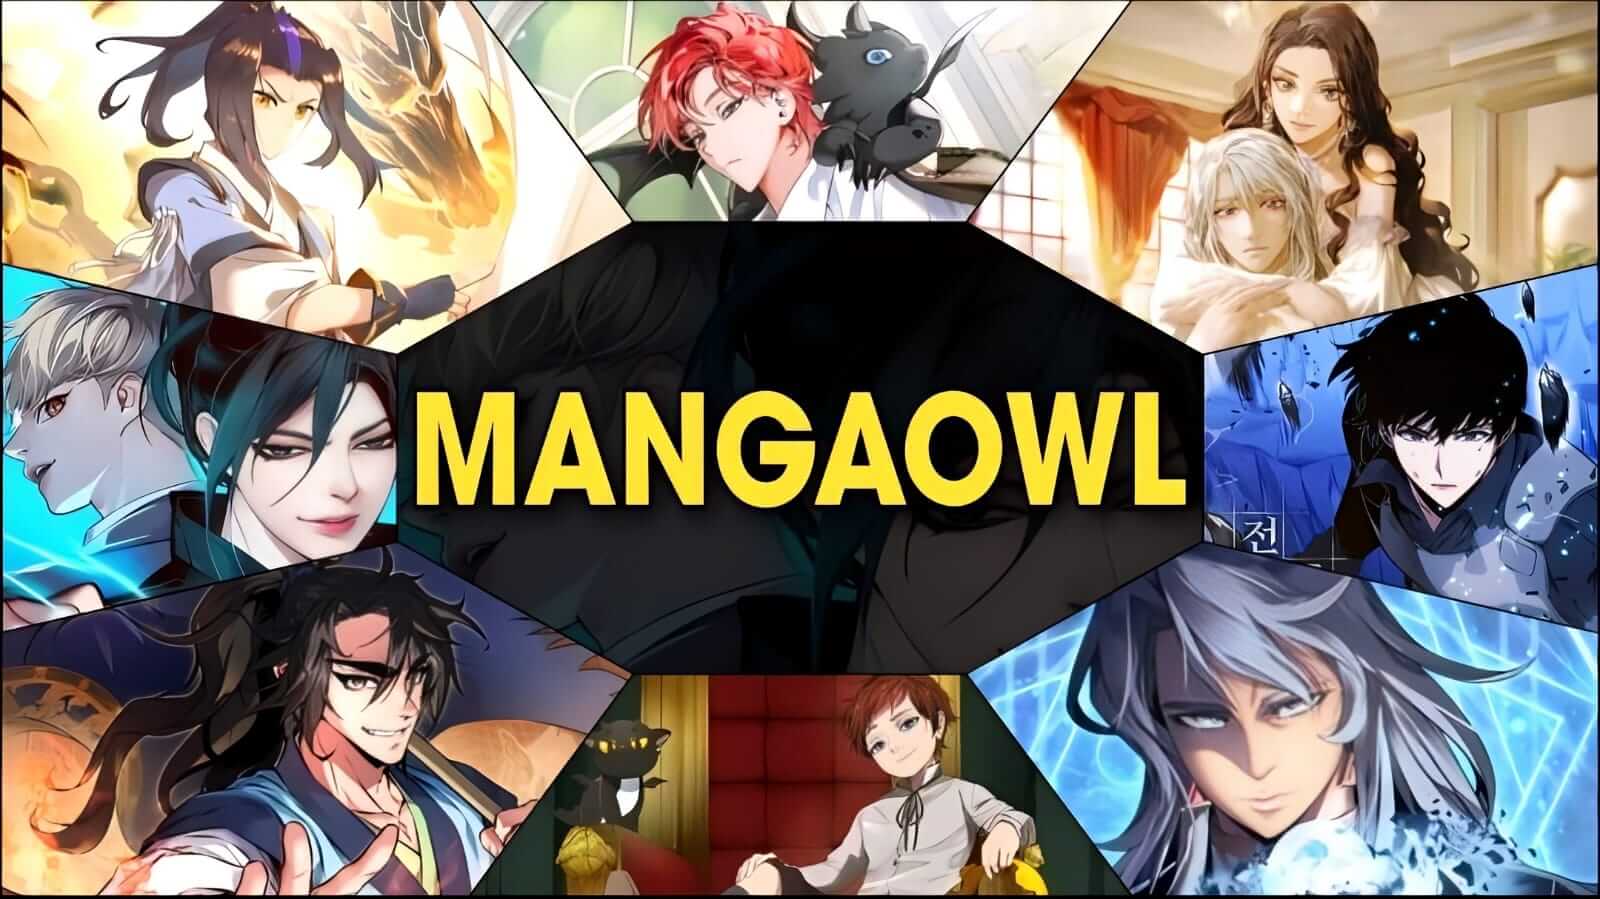 Mangaowl,